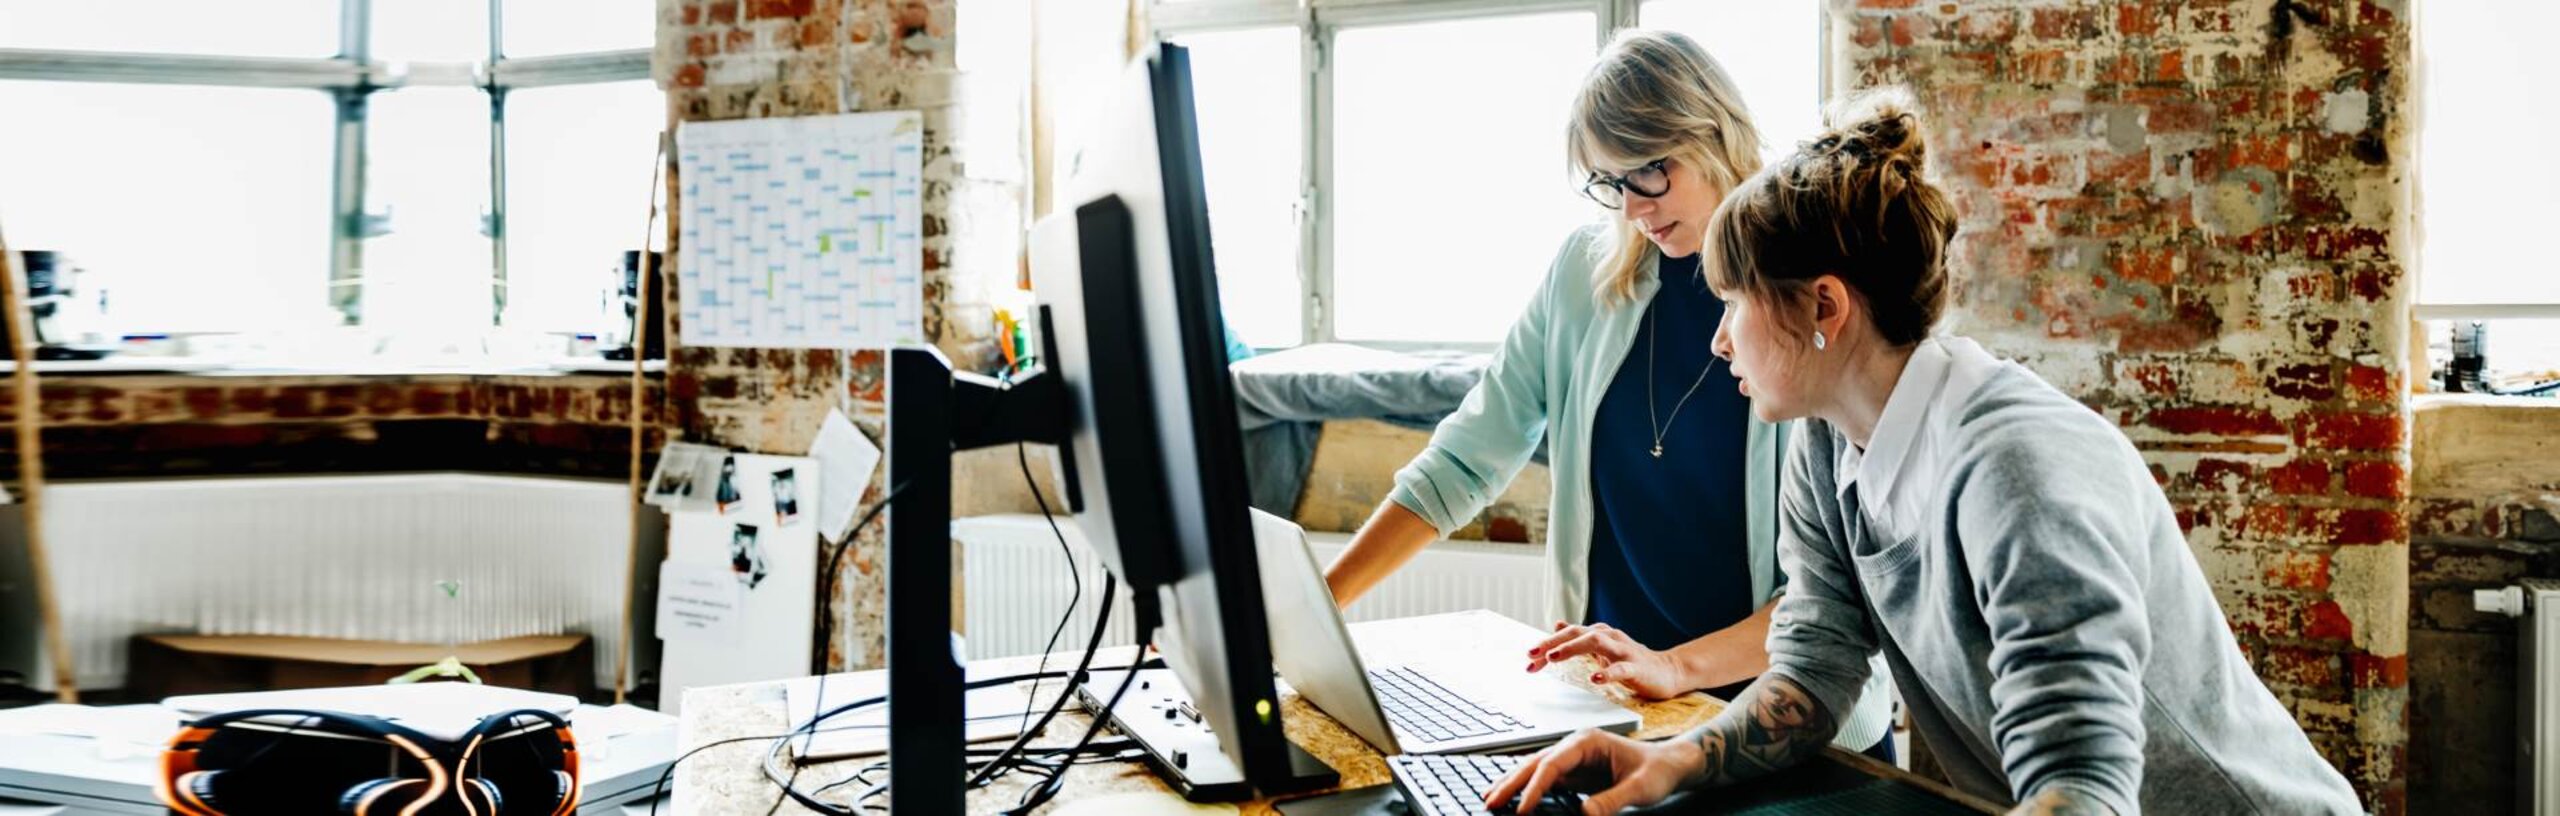 Zwei Frauen stehen an einem Hochtisch und arbeiten an einem Laptop und einem Computer.